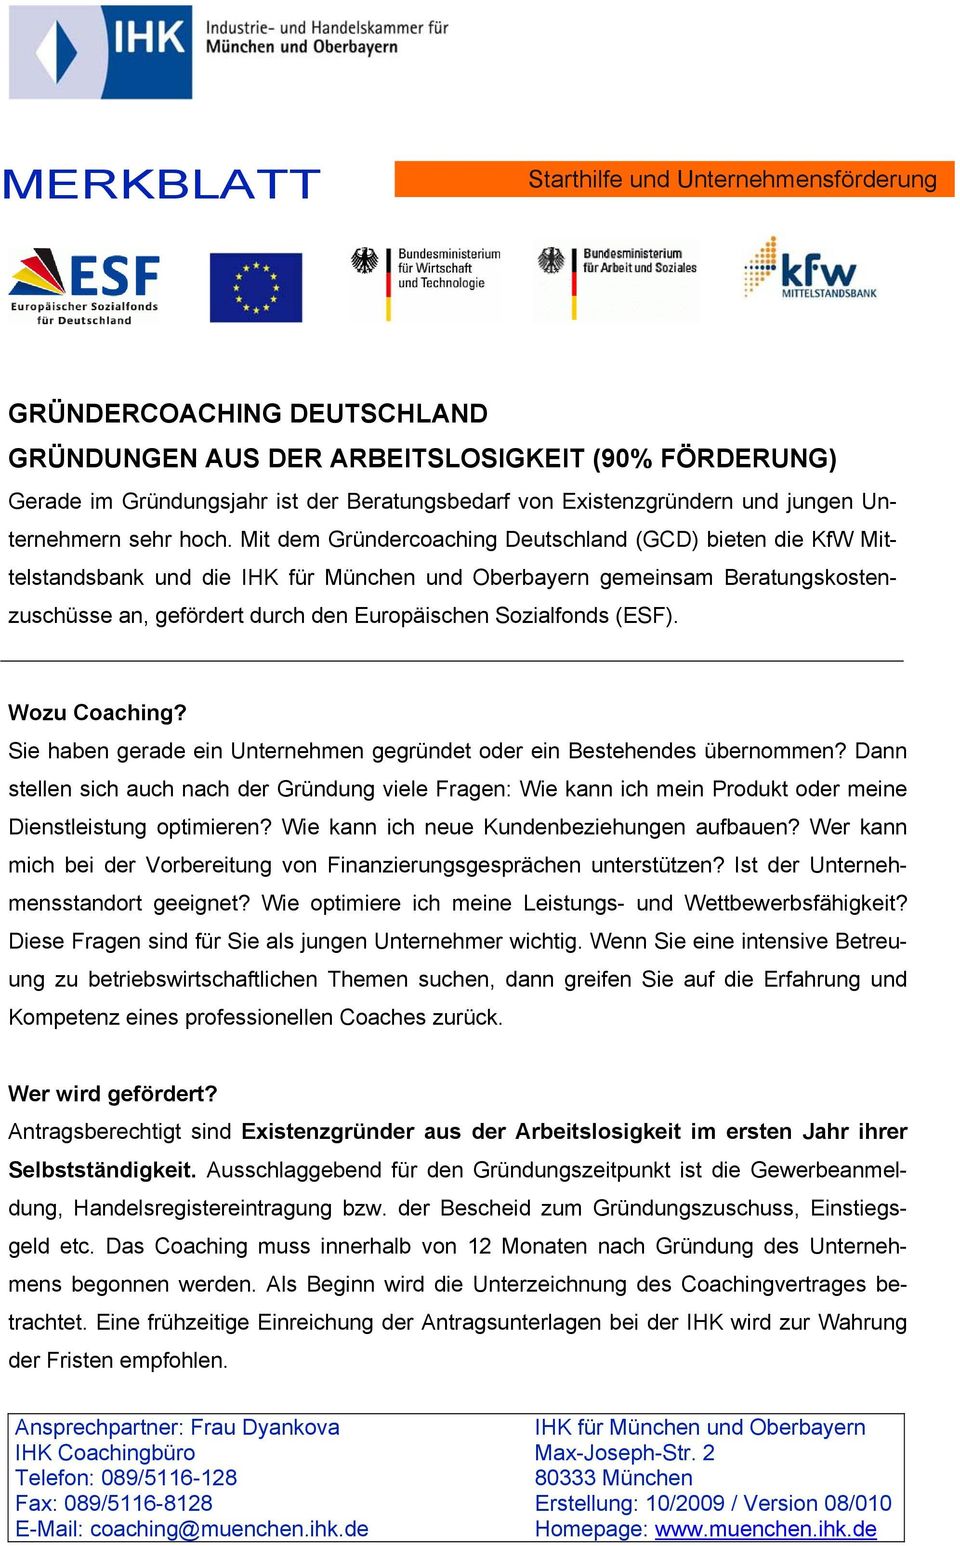 Mit dem Gründercoaching Deutschland (GCD) bieten die KfW Mittelstandsbank und die IHK für München und Oberbayern gemeinsam Beratungskostenzuschüsse an, gefördert durch den Europäischen Sozialfonds